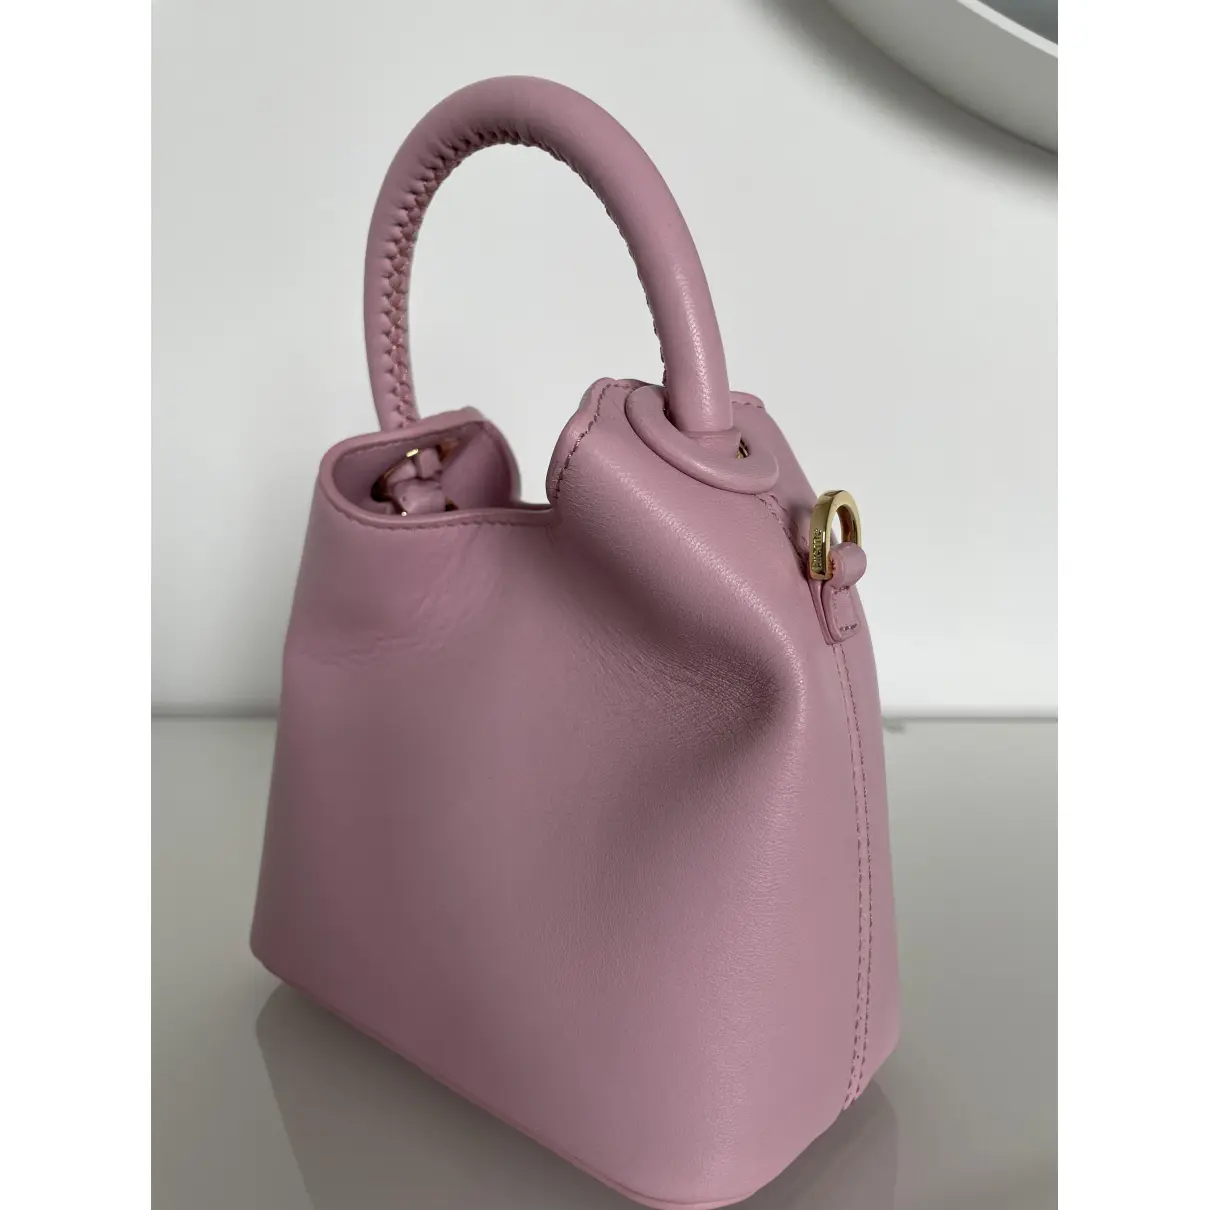 Buy Elleme Leather handbag online